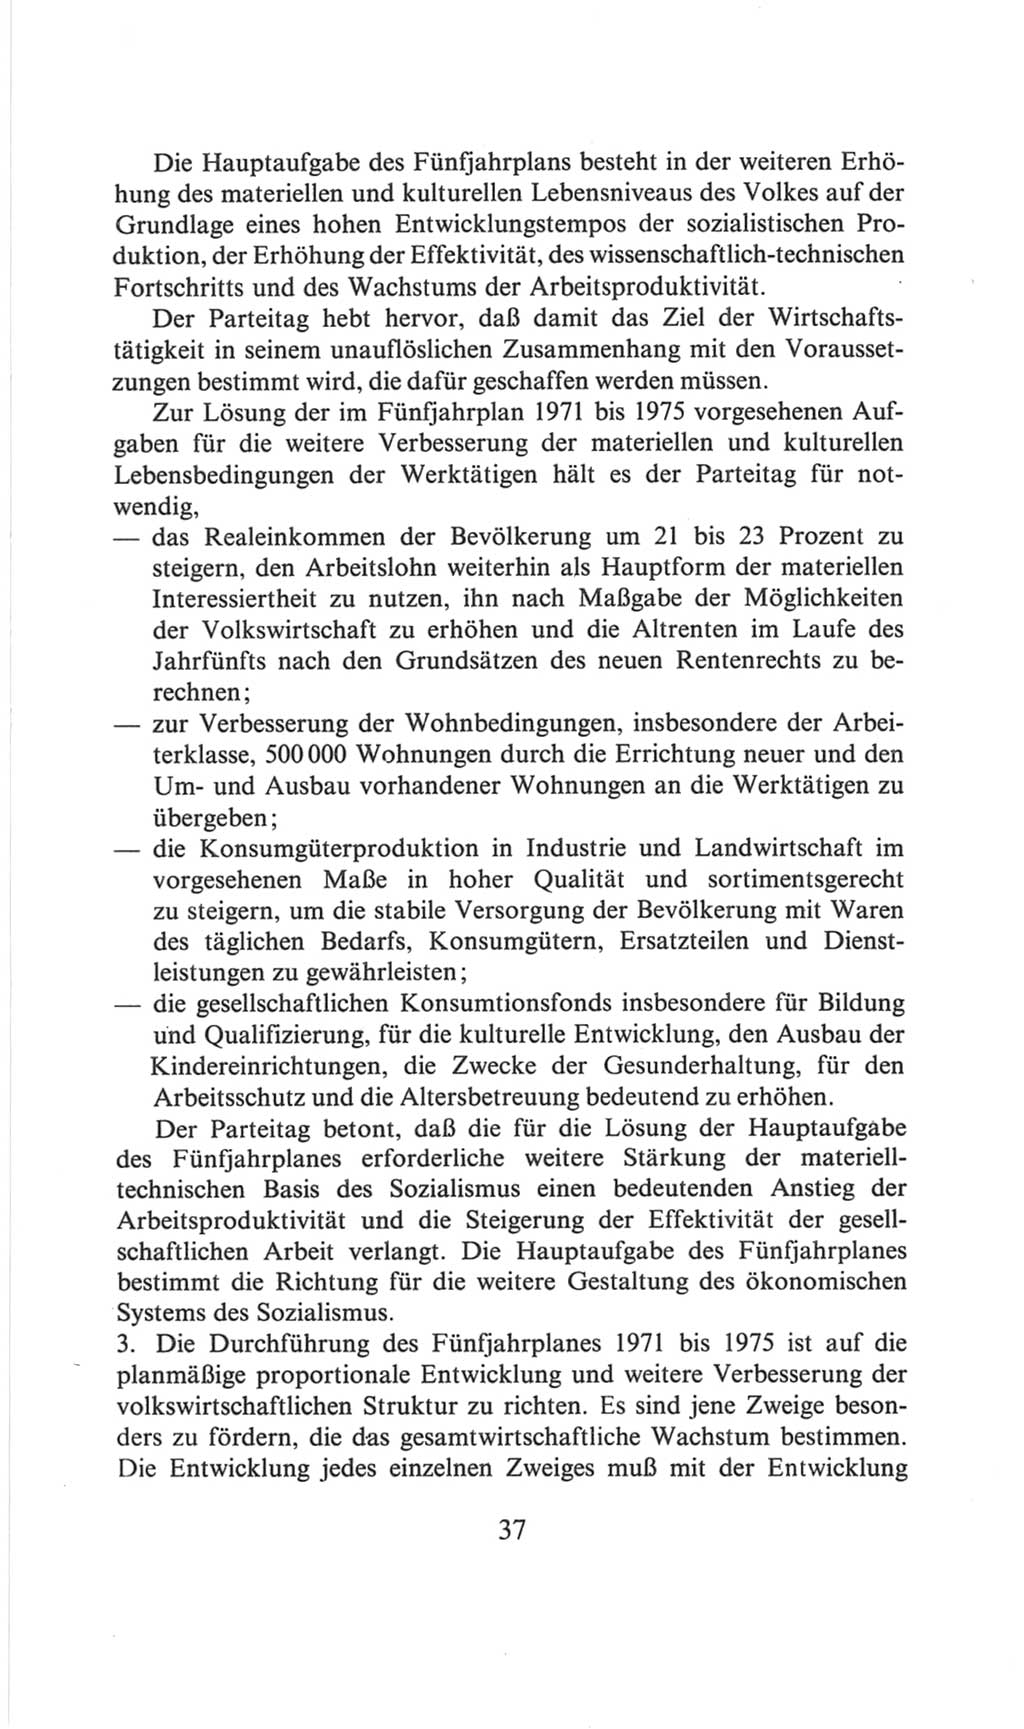 Volkskammer (VK) der Deutschen Demokratischen Republik (DDR), 6. Wahlperiode 1971-1976, Seite 37 (VK. DDR 6. WP. 1971-1976, S. 37)